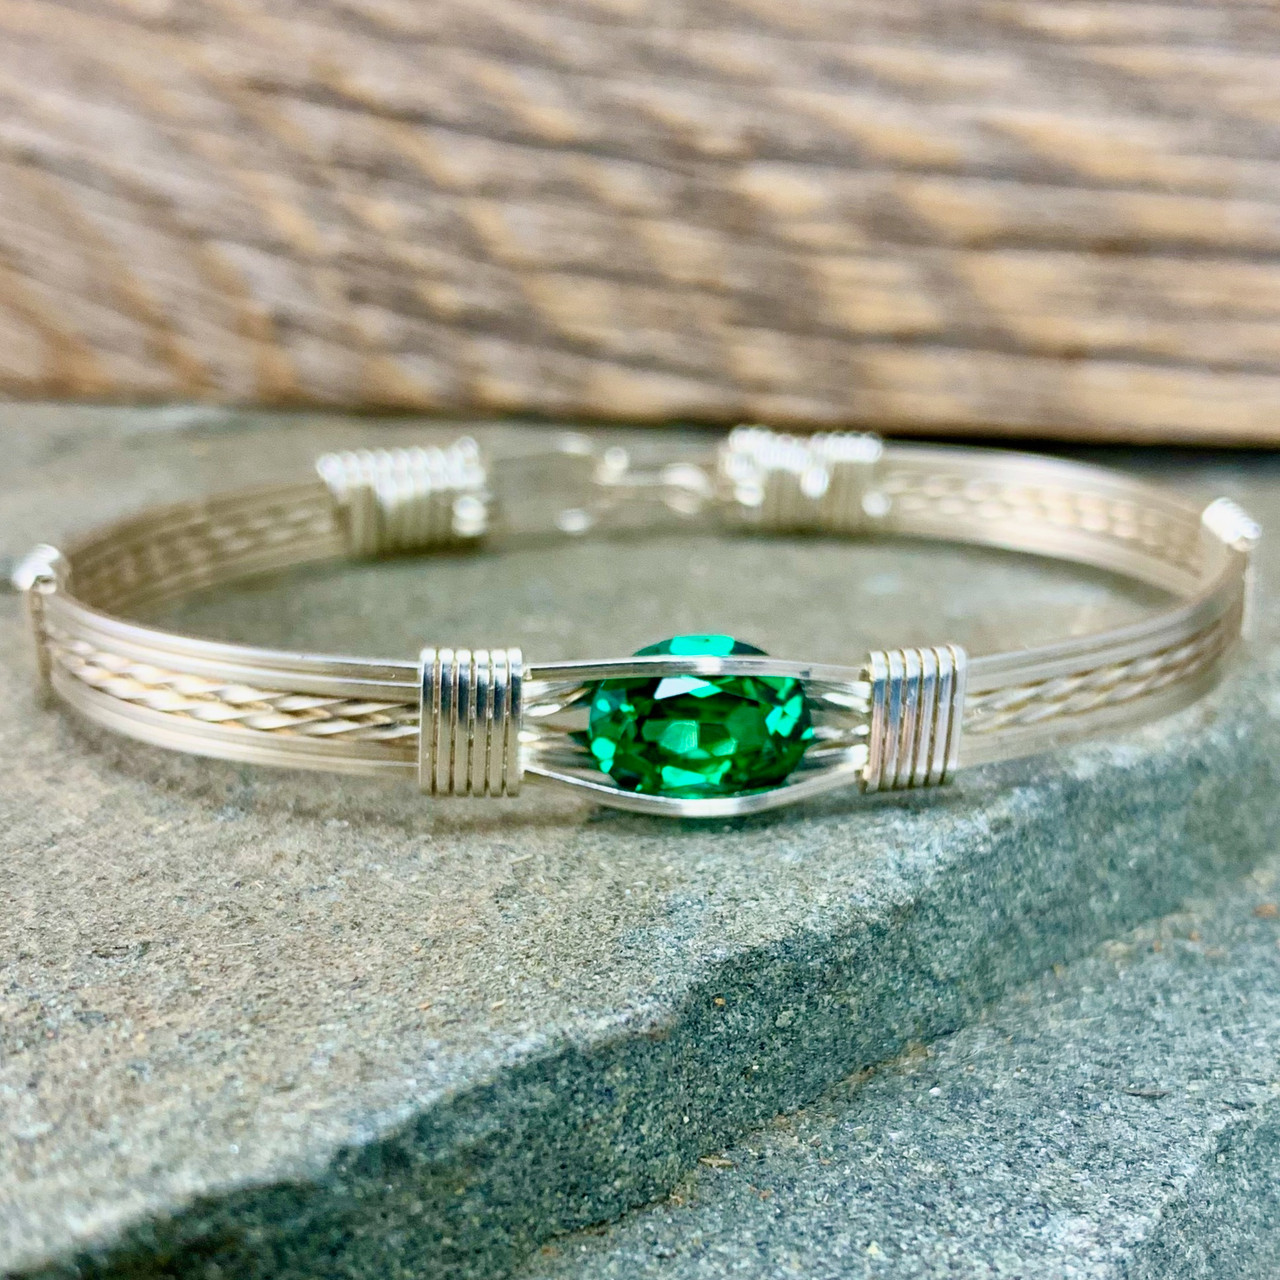 Buy Green Zircon Silver Bracelet Online | March Jewellery - March Jewellery  by FableStreet